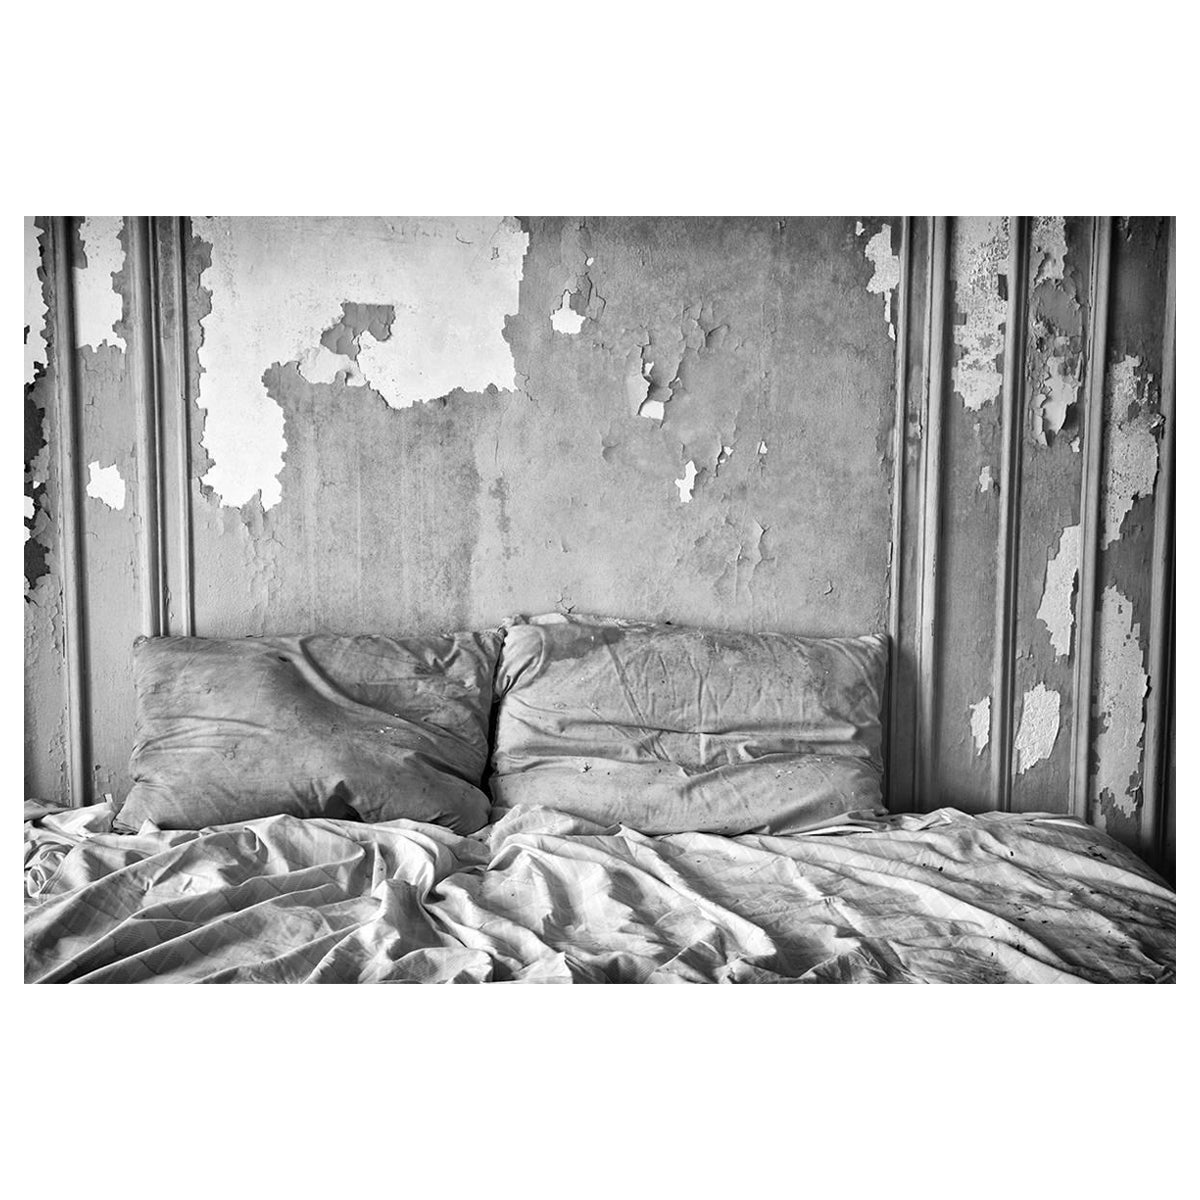 Rebecca Skinner Black and White Photograph – "Over", zeitgenössisch, verlassen, Bett, Kissen, schwarz, weiß, Fotografie